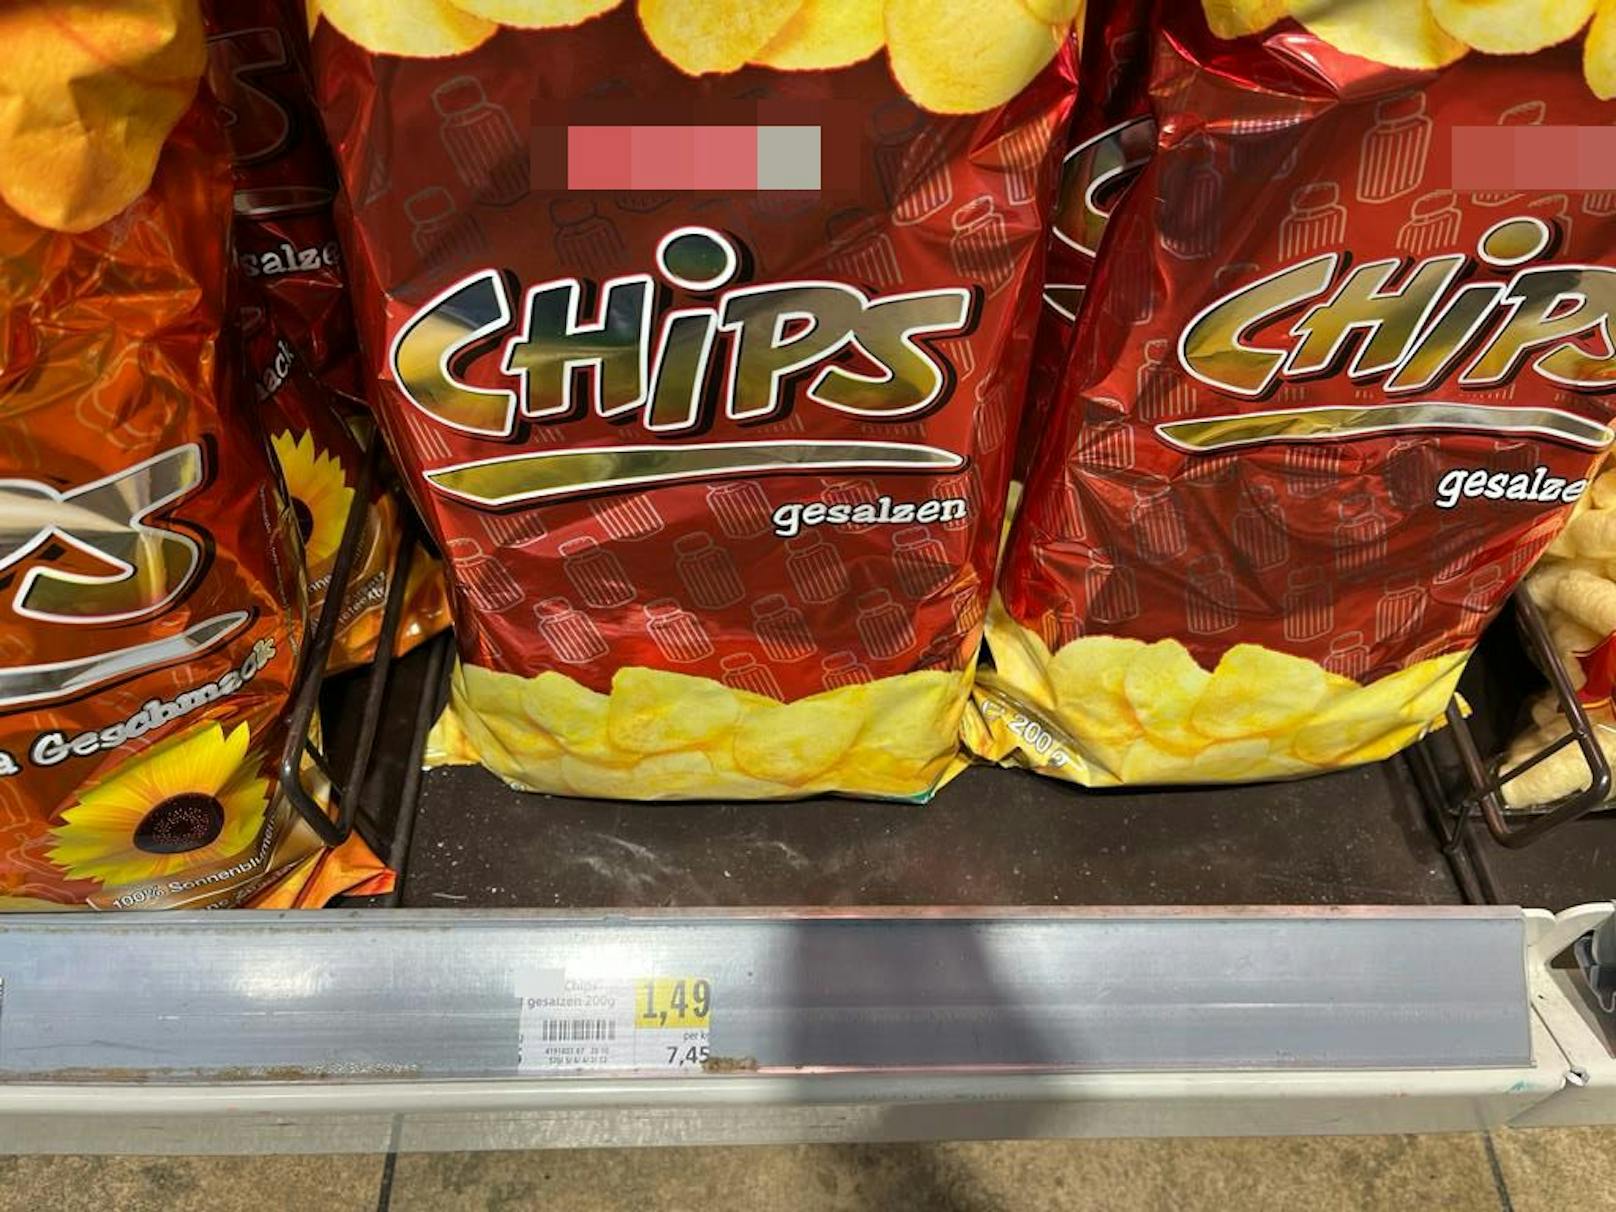 Auch bei Chips ist der Unterschied gesalzen: 1,49 Euro für mehr Inhalt.